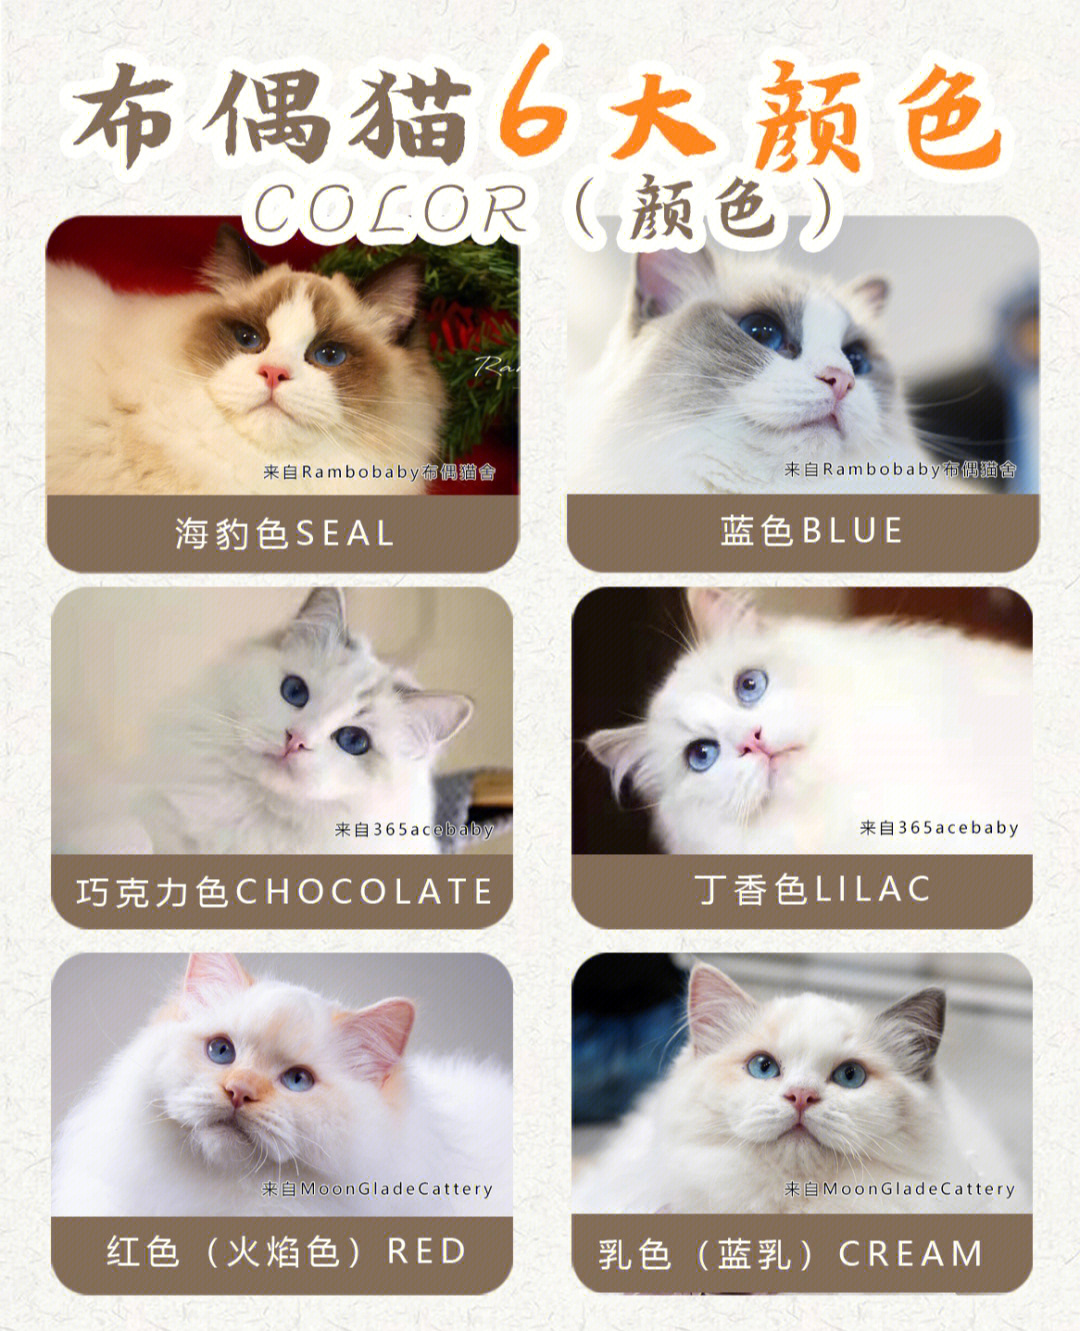 布偶猫分类的构成个人认为,布偶猫的分类应该由三部分共同构成!